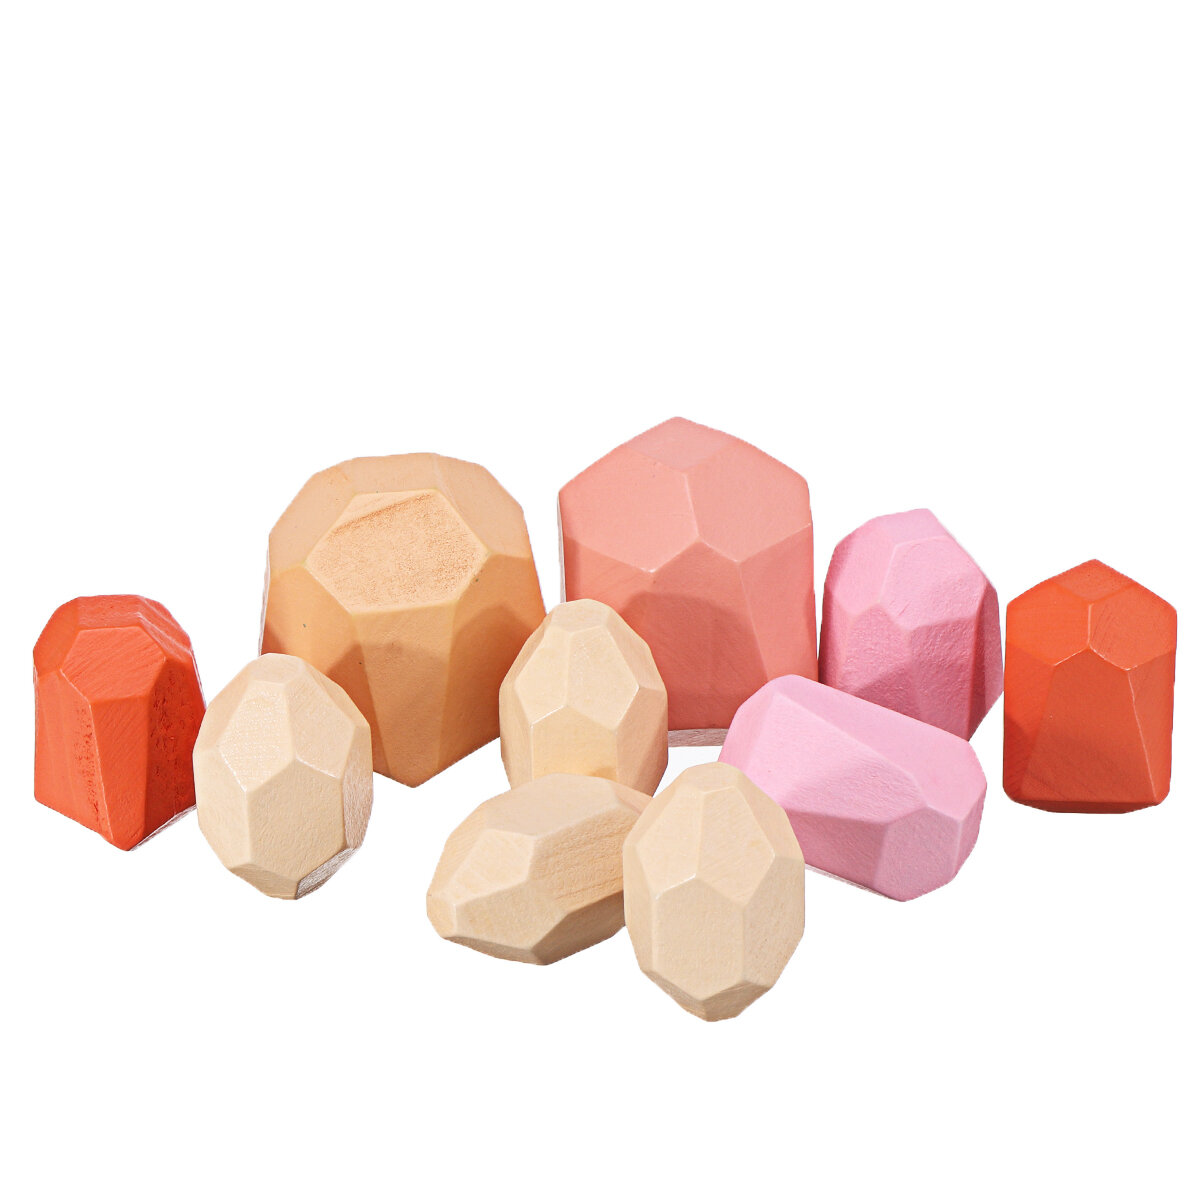 Stationery  Banggood Детский деревянный цветной камень Jenga Building Block Игрушка, развивающие игрушки, творческий блок для укладки, баланс